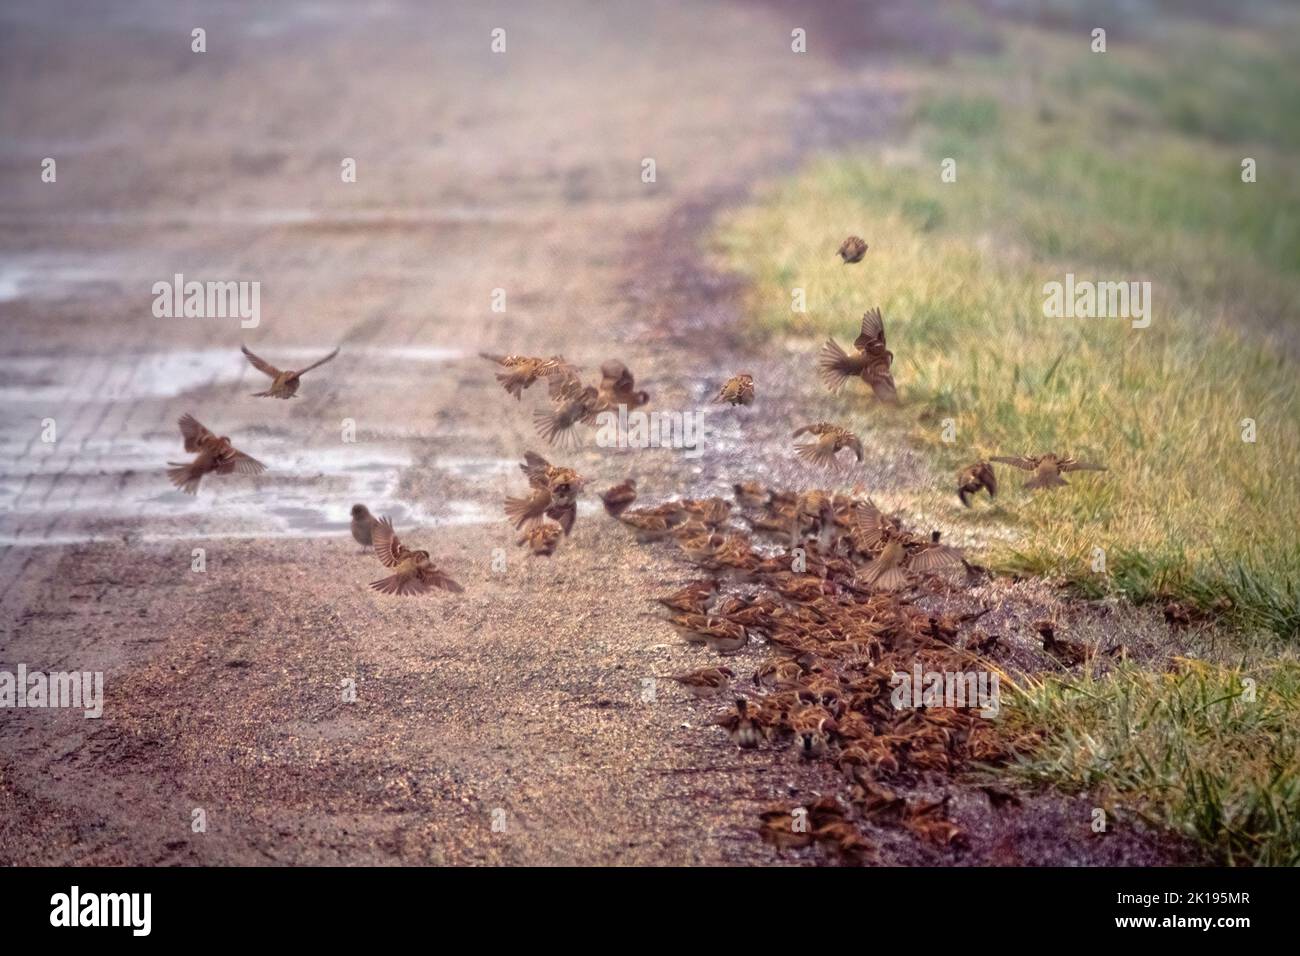 I passeri si nutrono in un gregge molto denso sul lato di una strada di campagna. La granella viene versata durante il trasporto in un veicolo. Guarda come si fluttano splendidamente Foto Stock